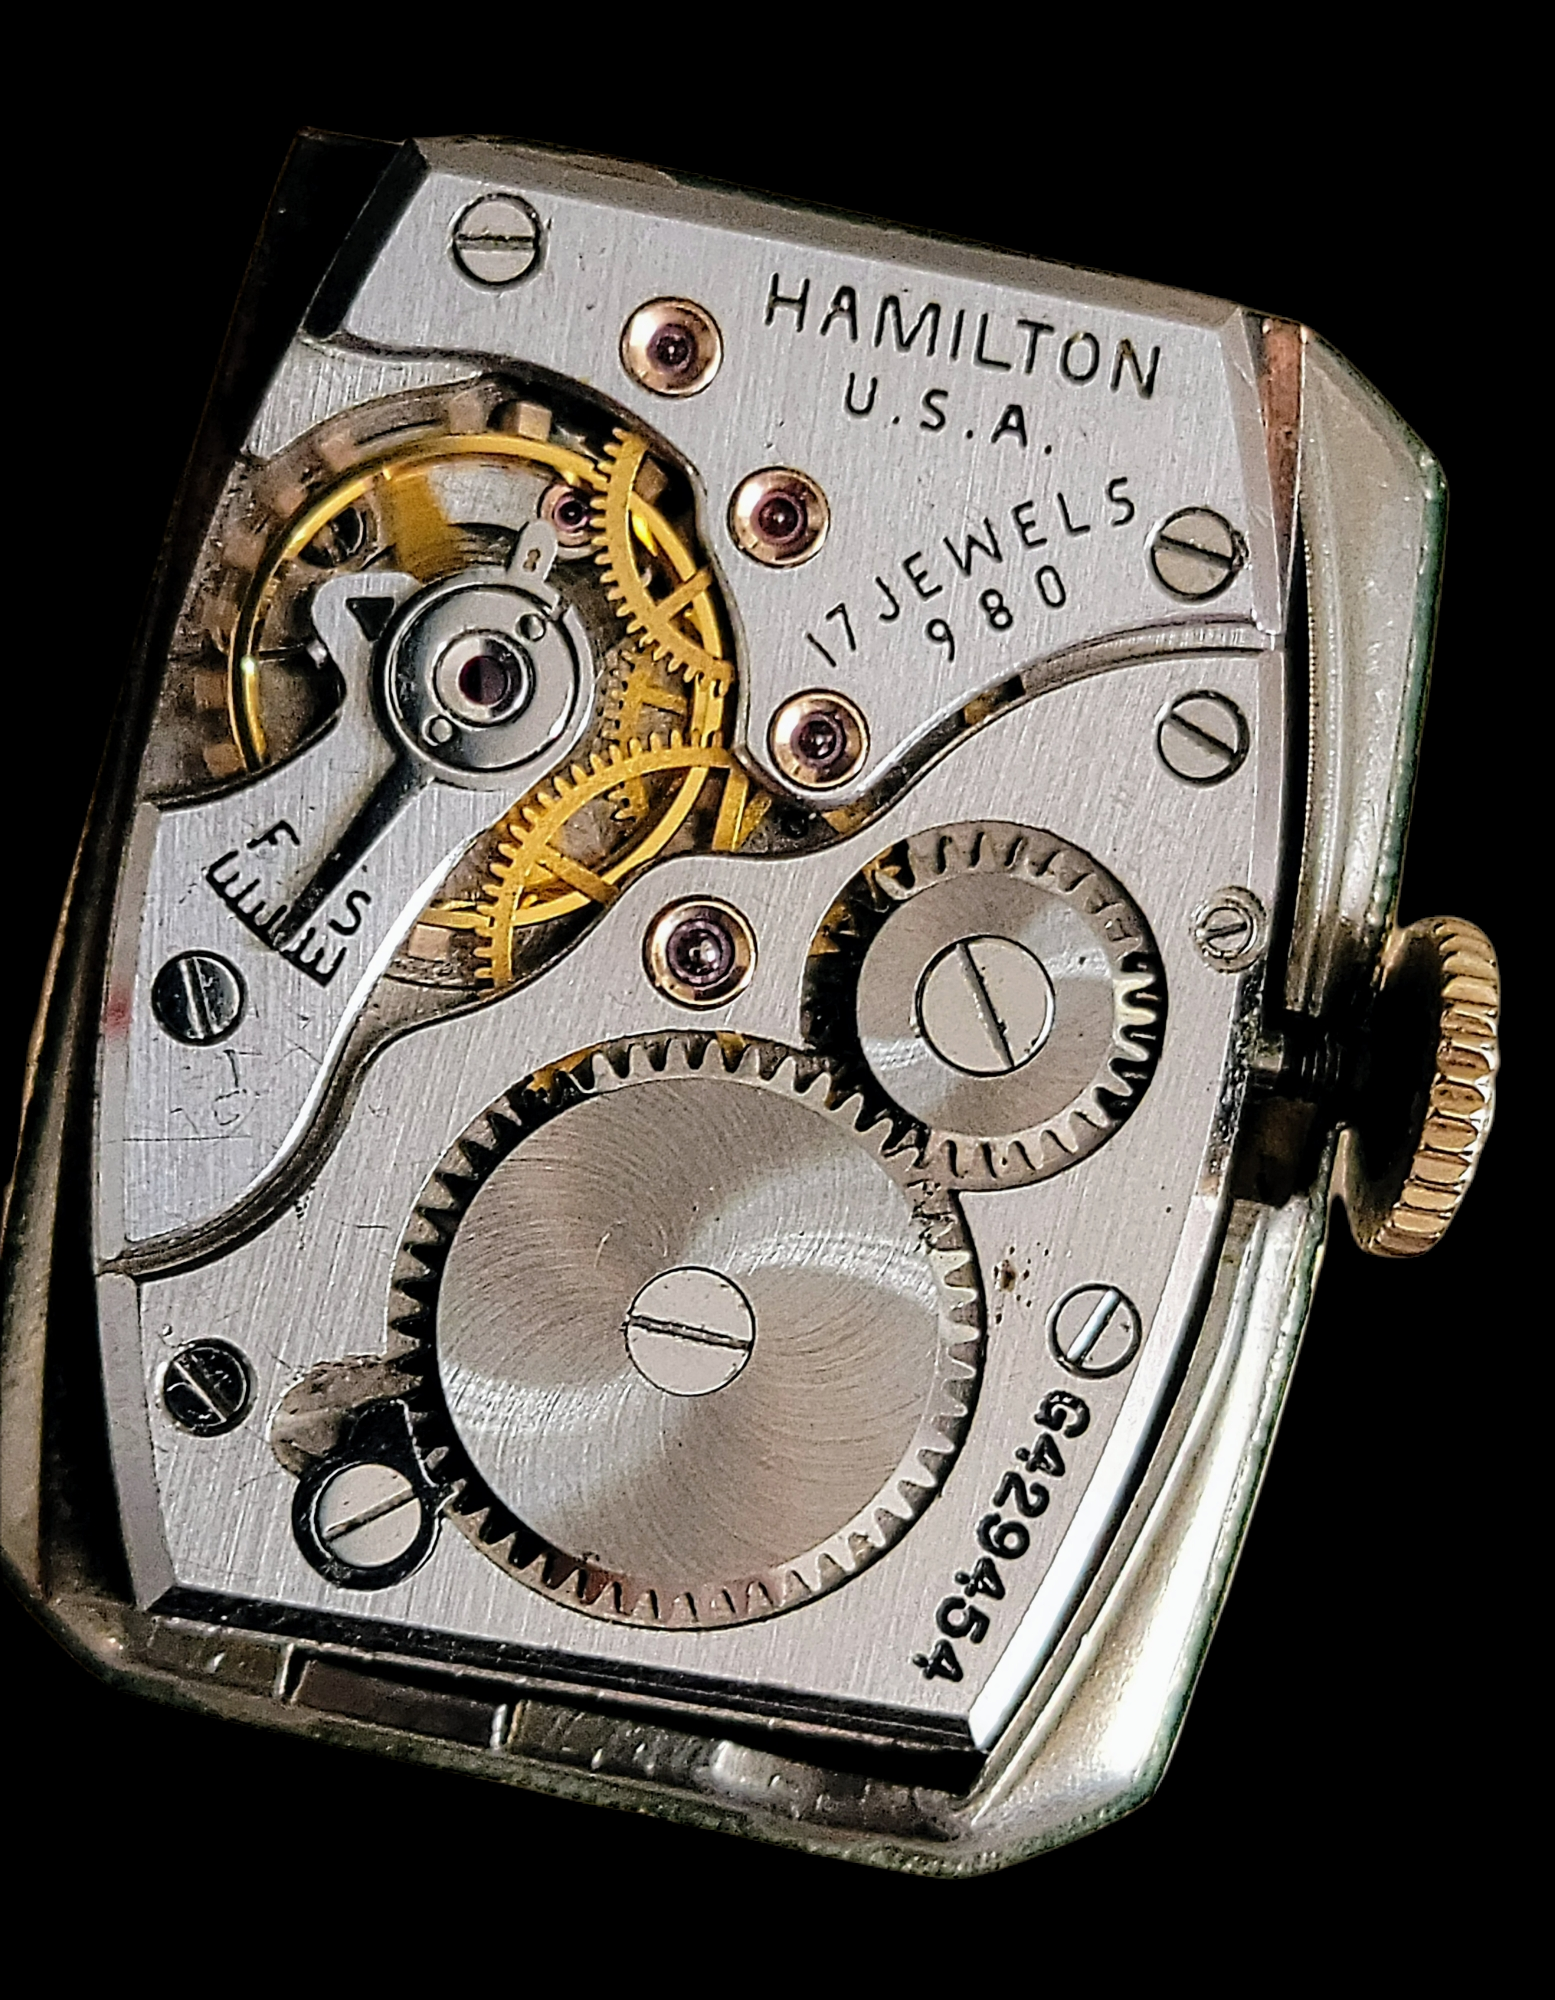 1946 HAMILTON Alan Watch Grade 980 U.S.A. Made